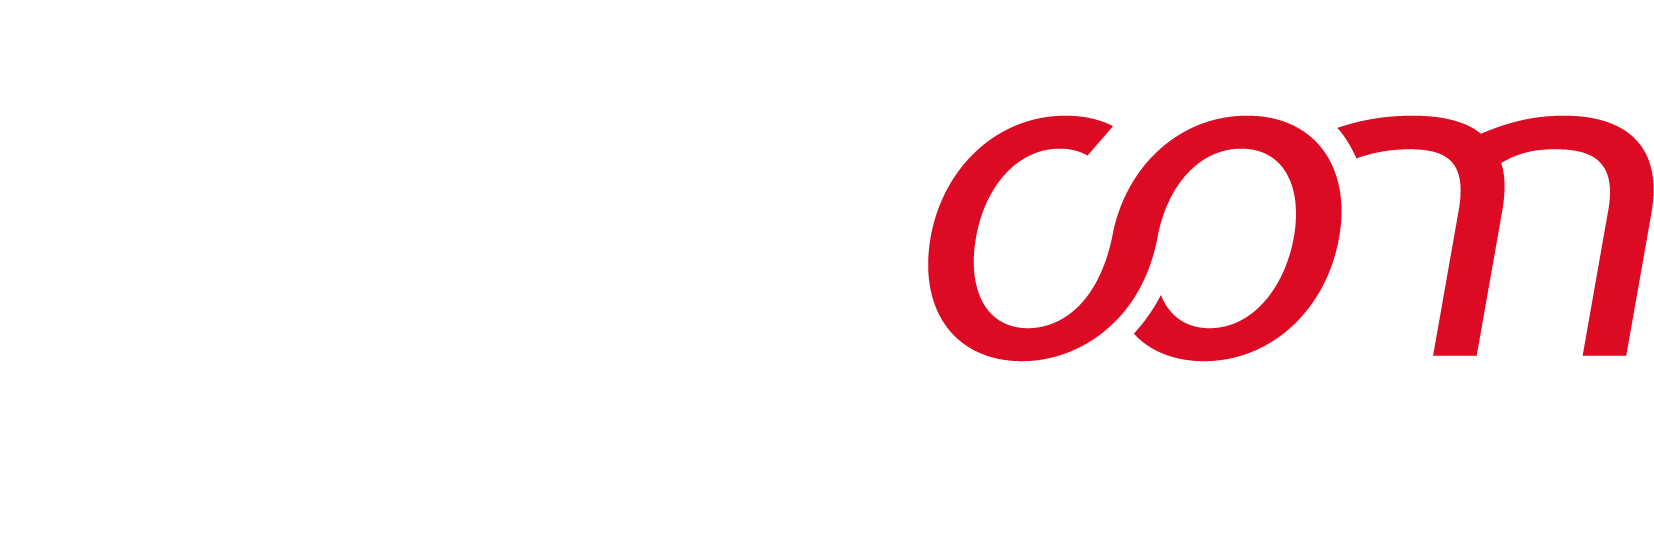 logo-partner-welacom